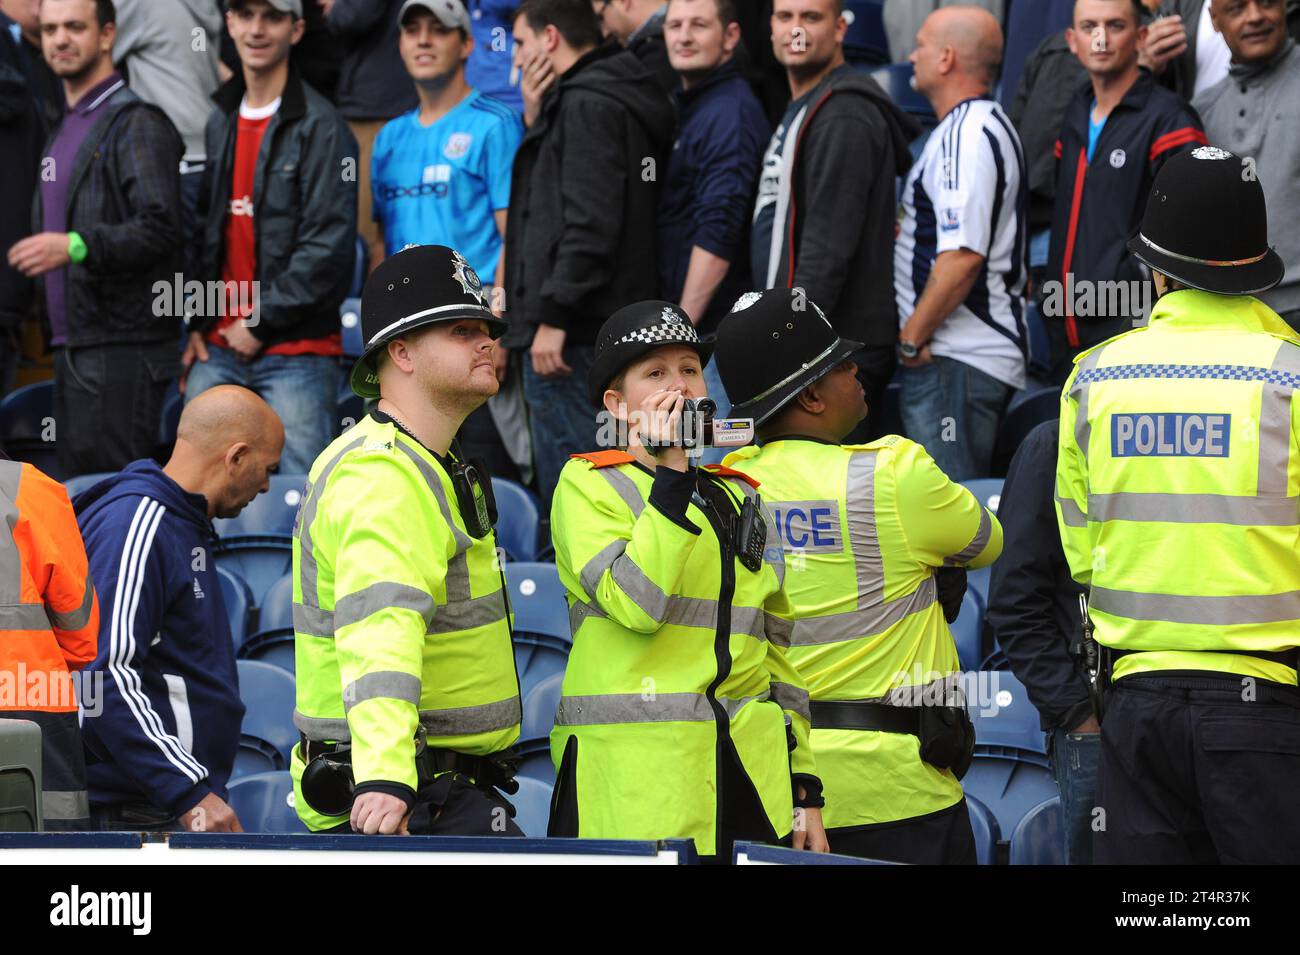 L'officier de police des West Midlands utilise une caméra vidéo pour surveiller les fans de foule de football West Bromwich Albion v Wolverhampton Wanderers 16/10/2011 Banque D'Images